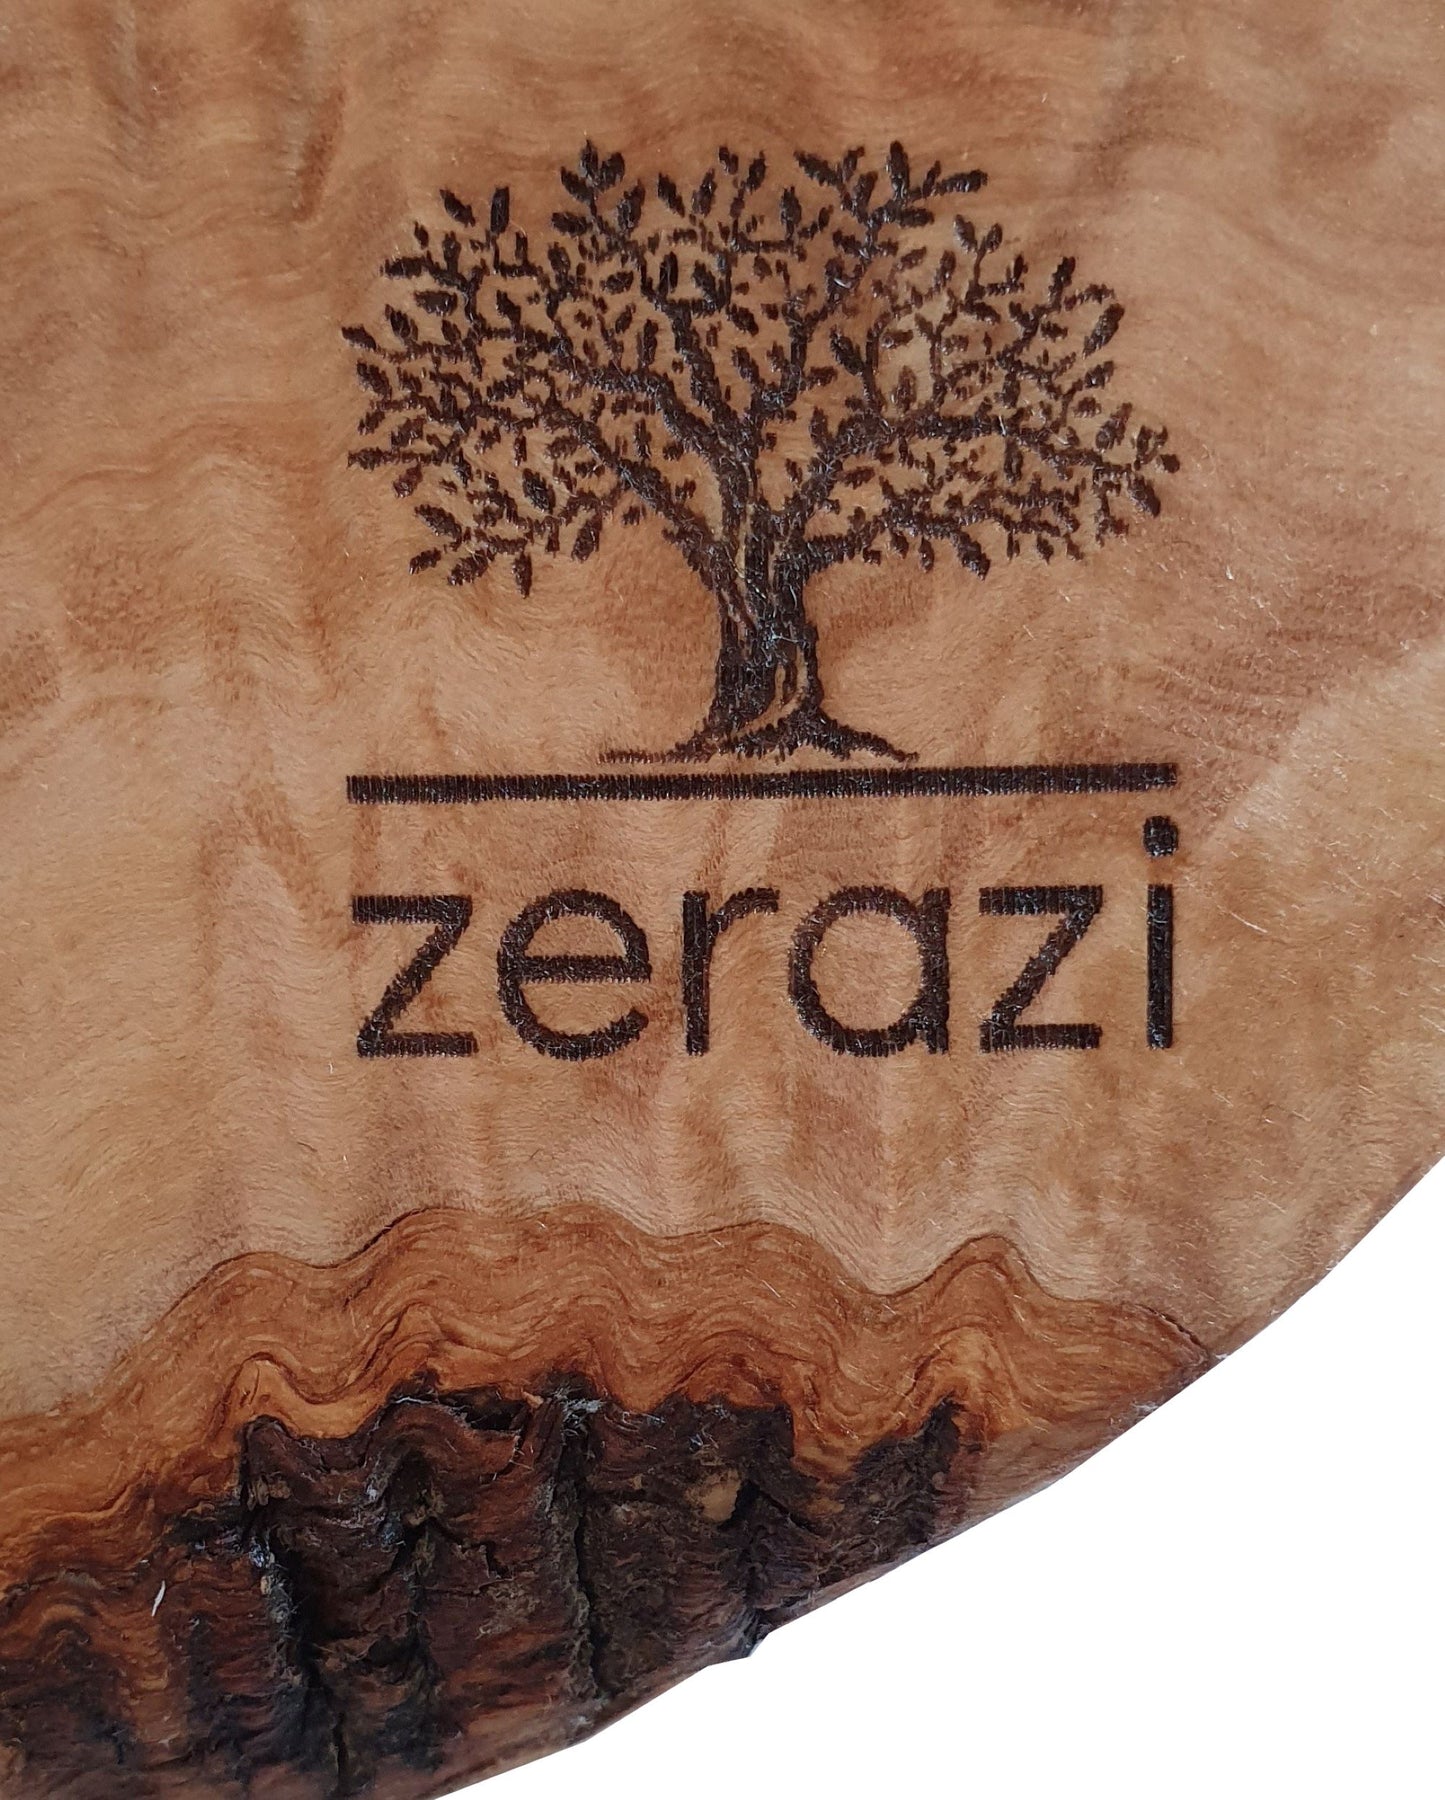 Zerazi | Honingpot met Honinglepel | Olijfhout | Ecologisch | Volledig handgemaakt | Duurzaam | Hygiënisch